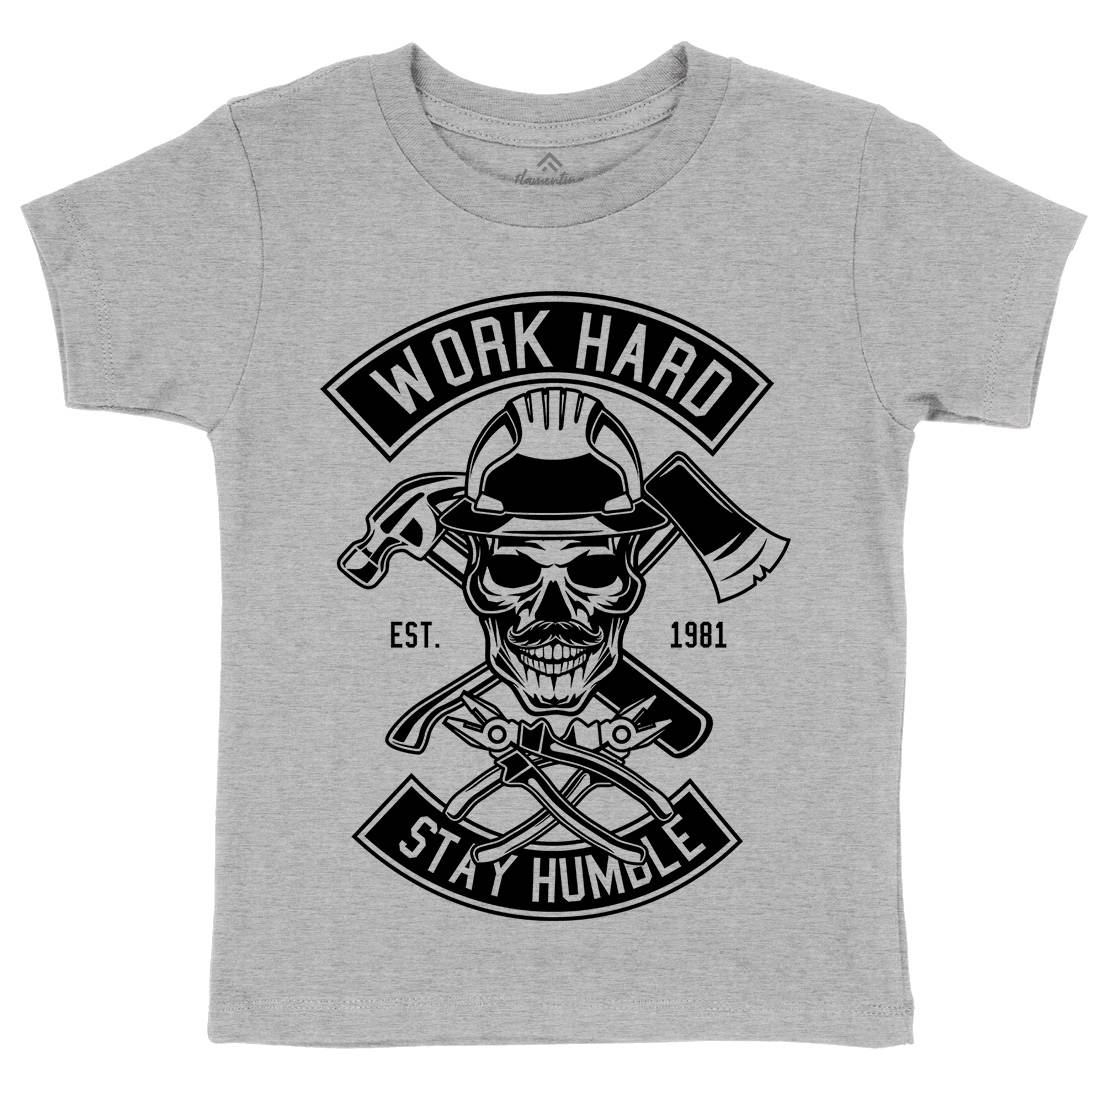 Work Hard Kids Organic Crew Neck T-Shirt Retro B673